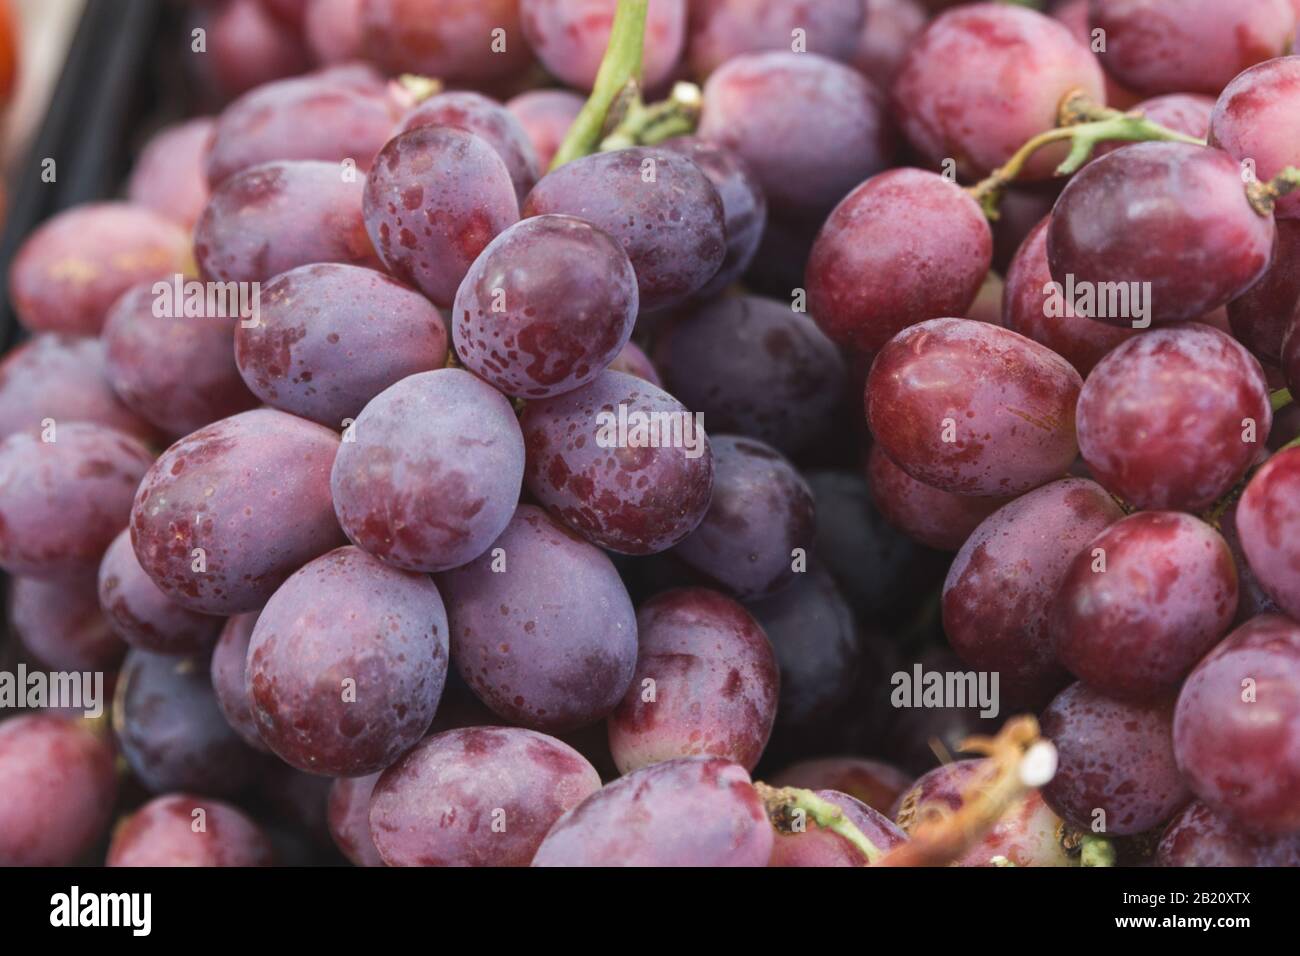 Stock photo d'une photo détaillée d'un groupe de délicieux raisins violets dans un étalage de marché Banque D'Images